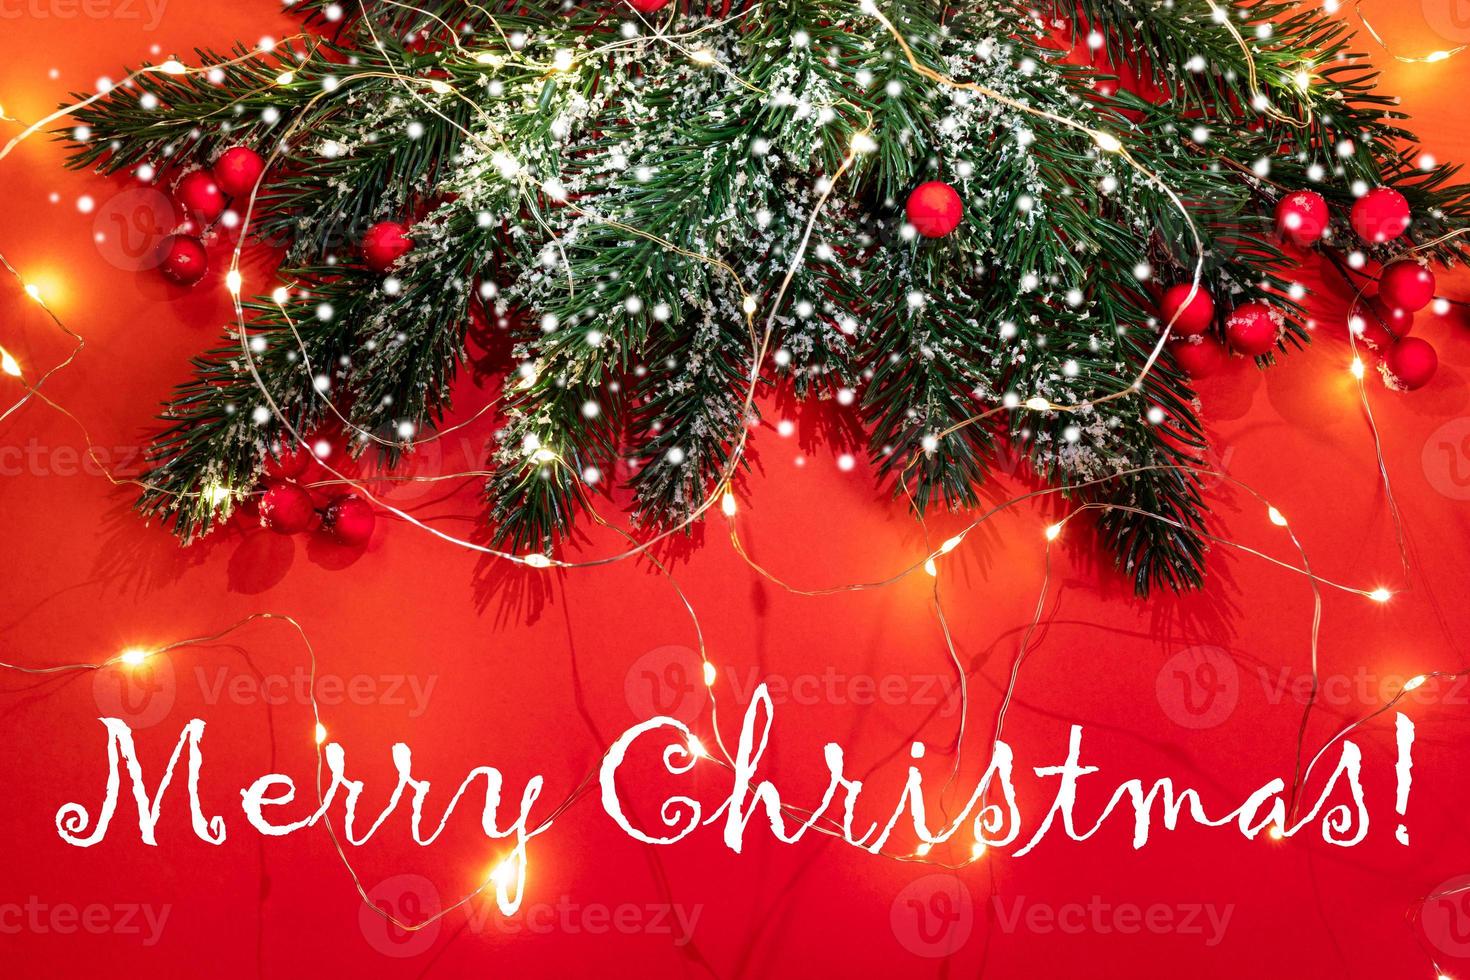 tarjeta de felicitación festiva de navidad con ramas de abeto, nieve, bayas rojas, luces de navidad en rojo con el título feliz navidad. foto